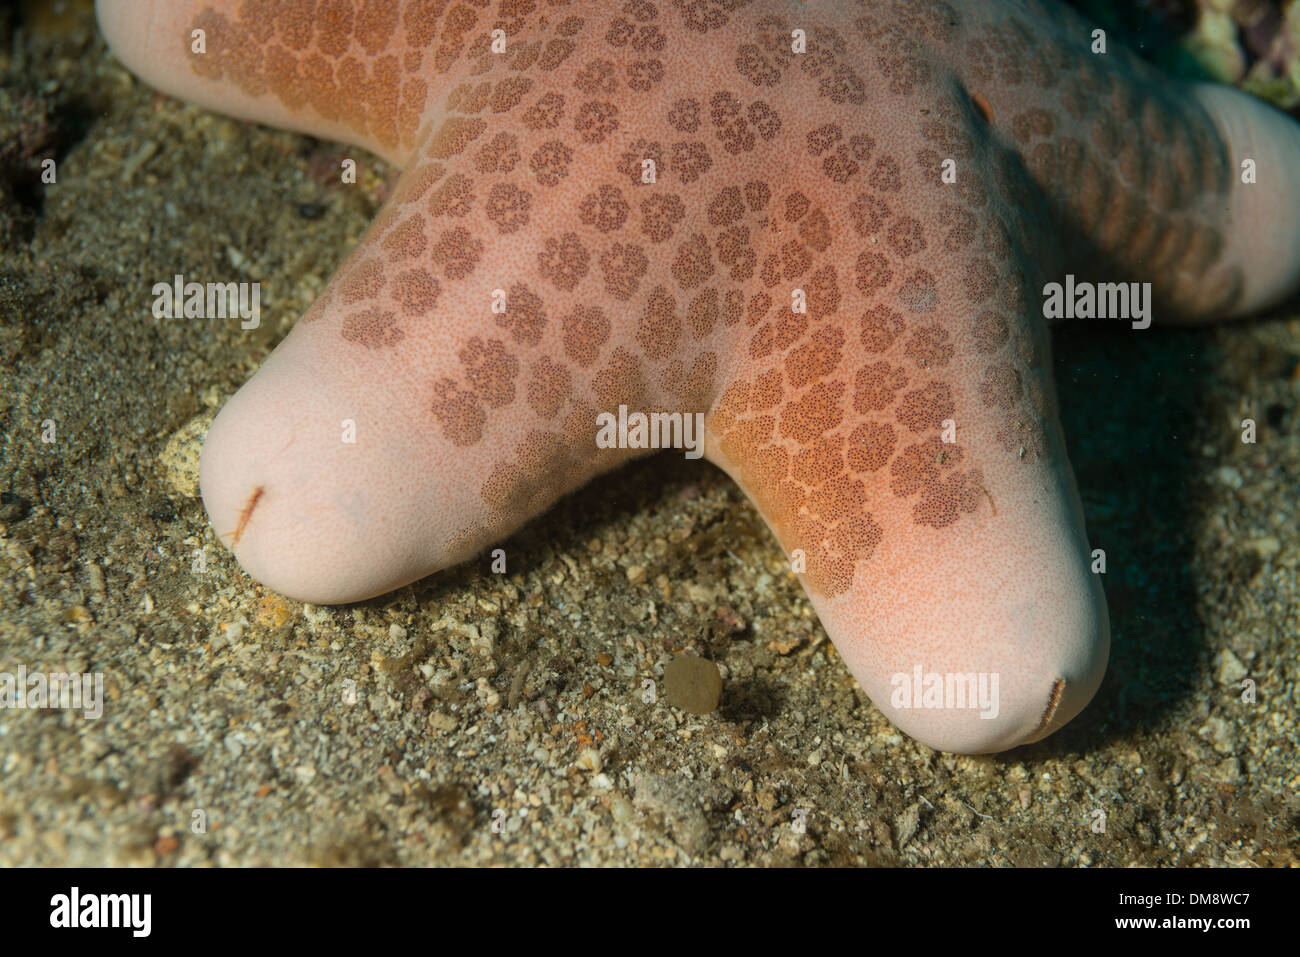 Granulated sea star on the ocean floor Stock Photo